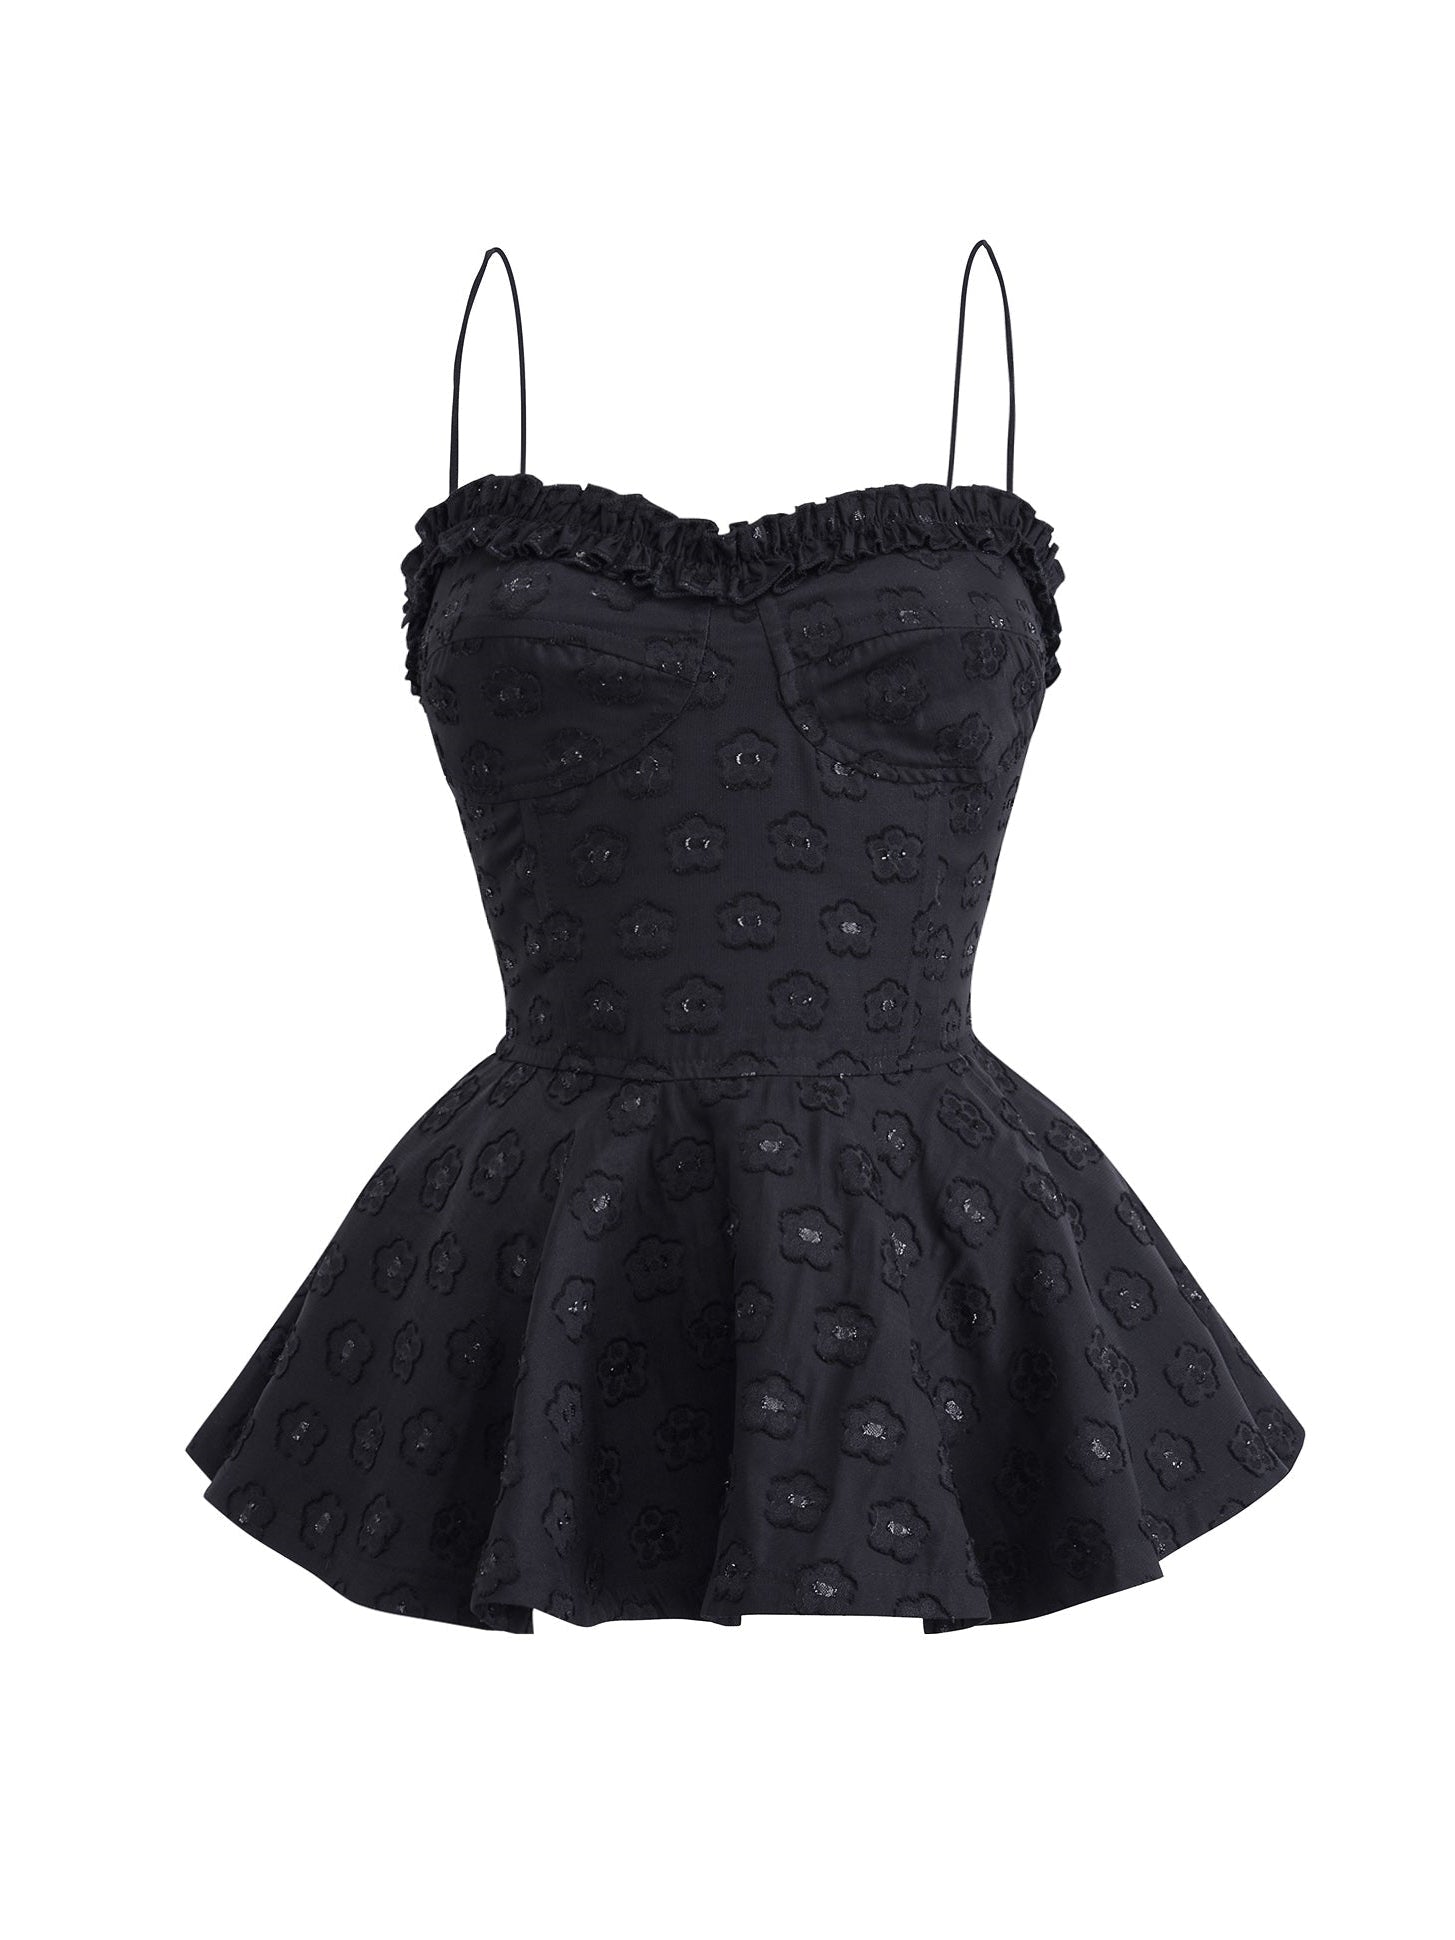 Noir Elegance Peplum Dress Set - chiclara